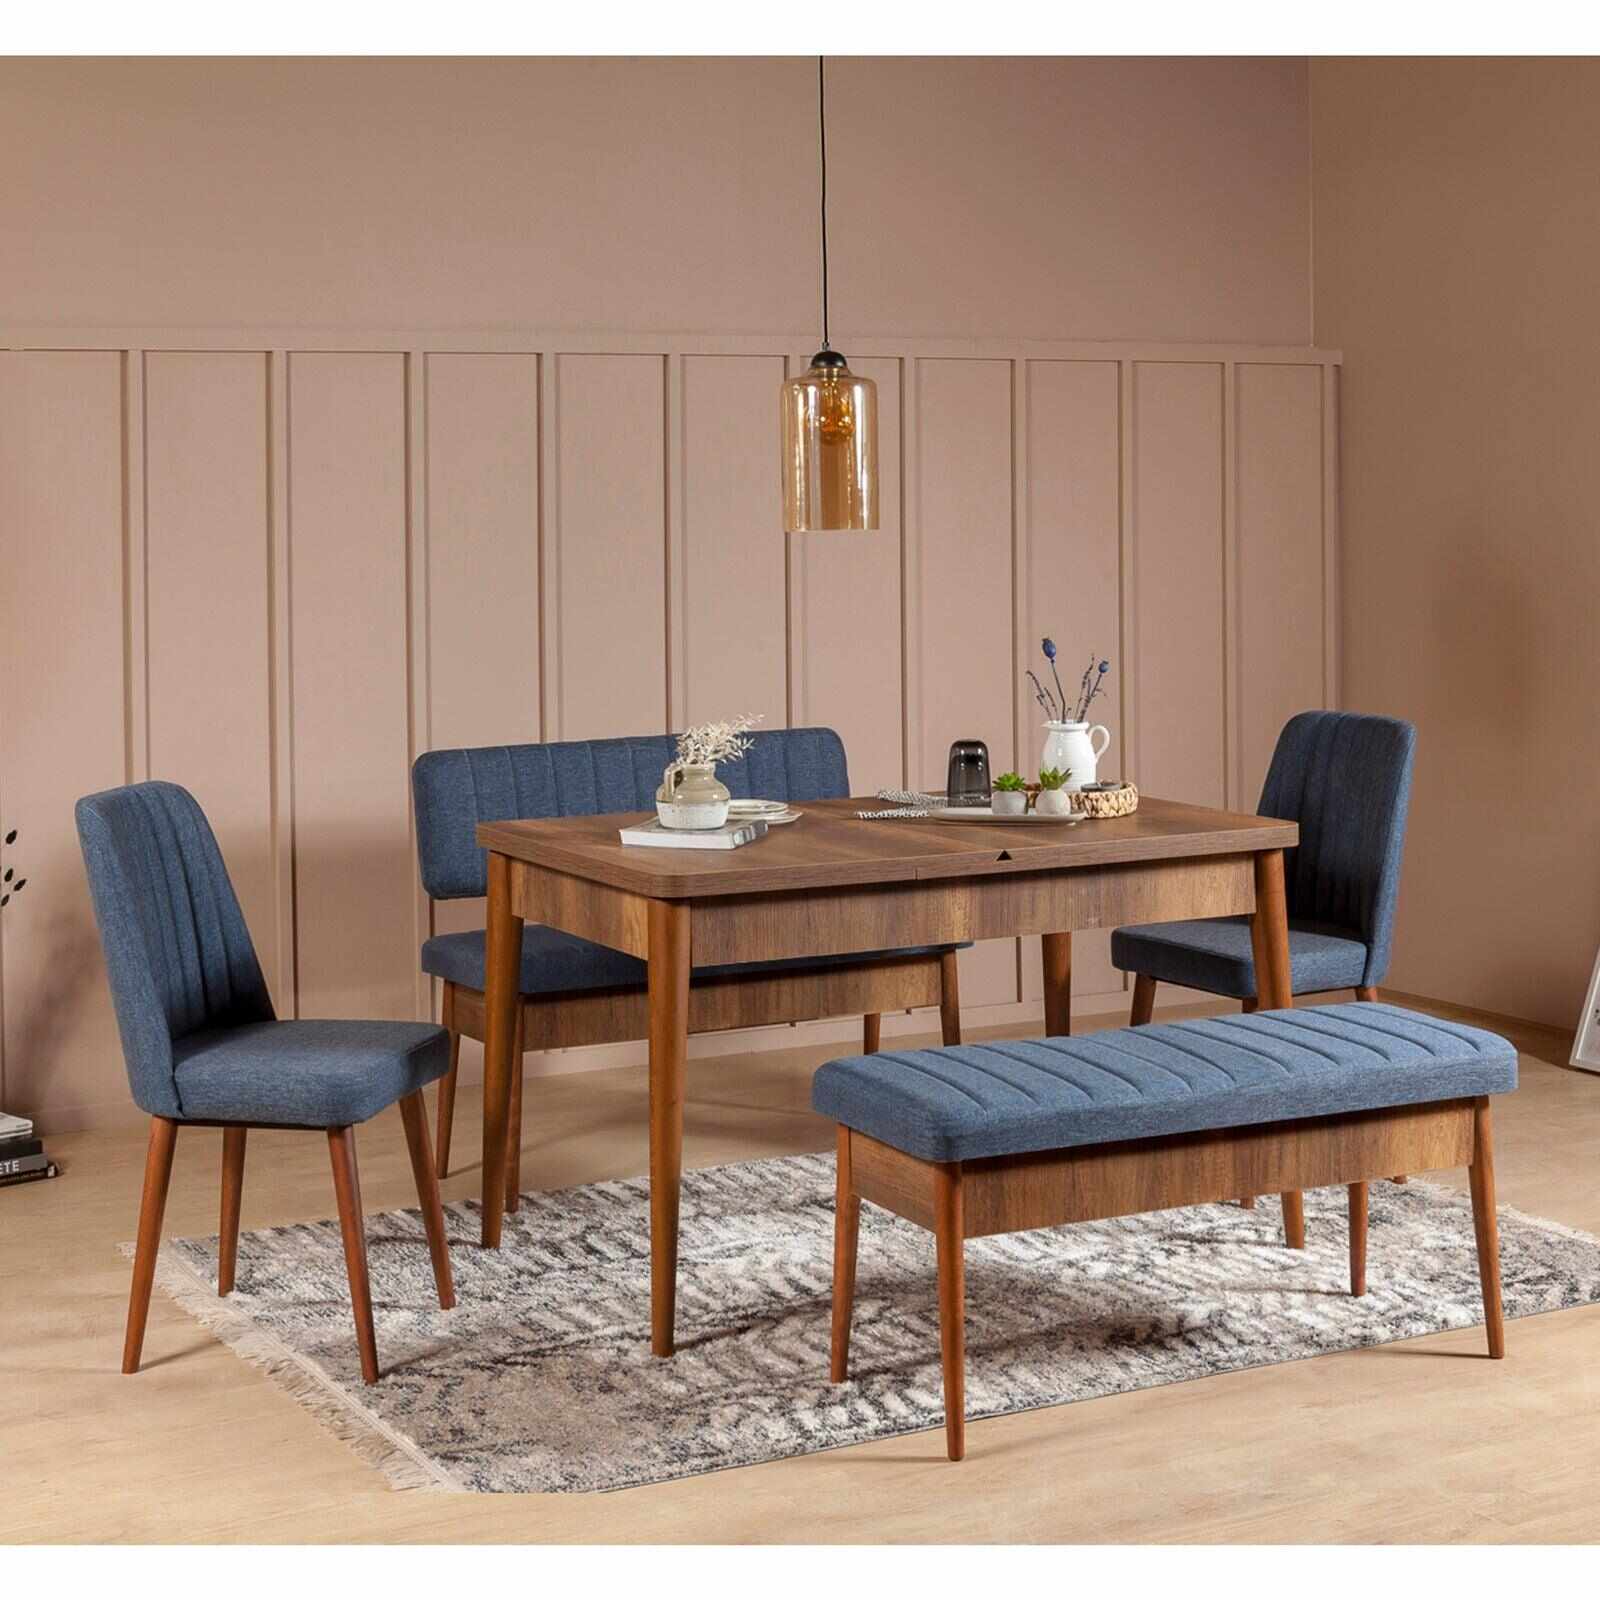 Set masă și scaune (5 bucăți) Vina, Nuc, 130 x 77 x 80 cm